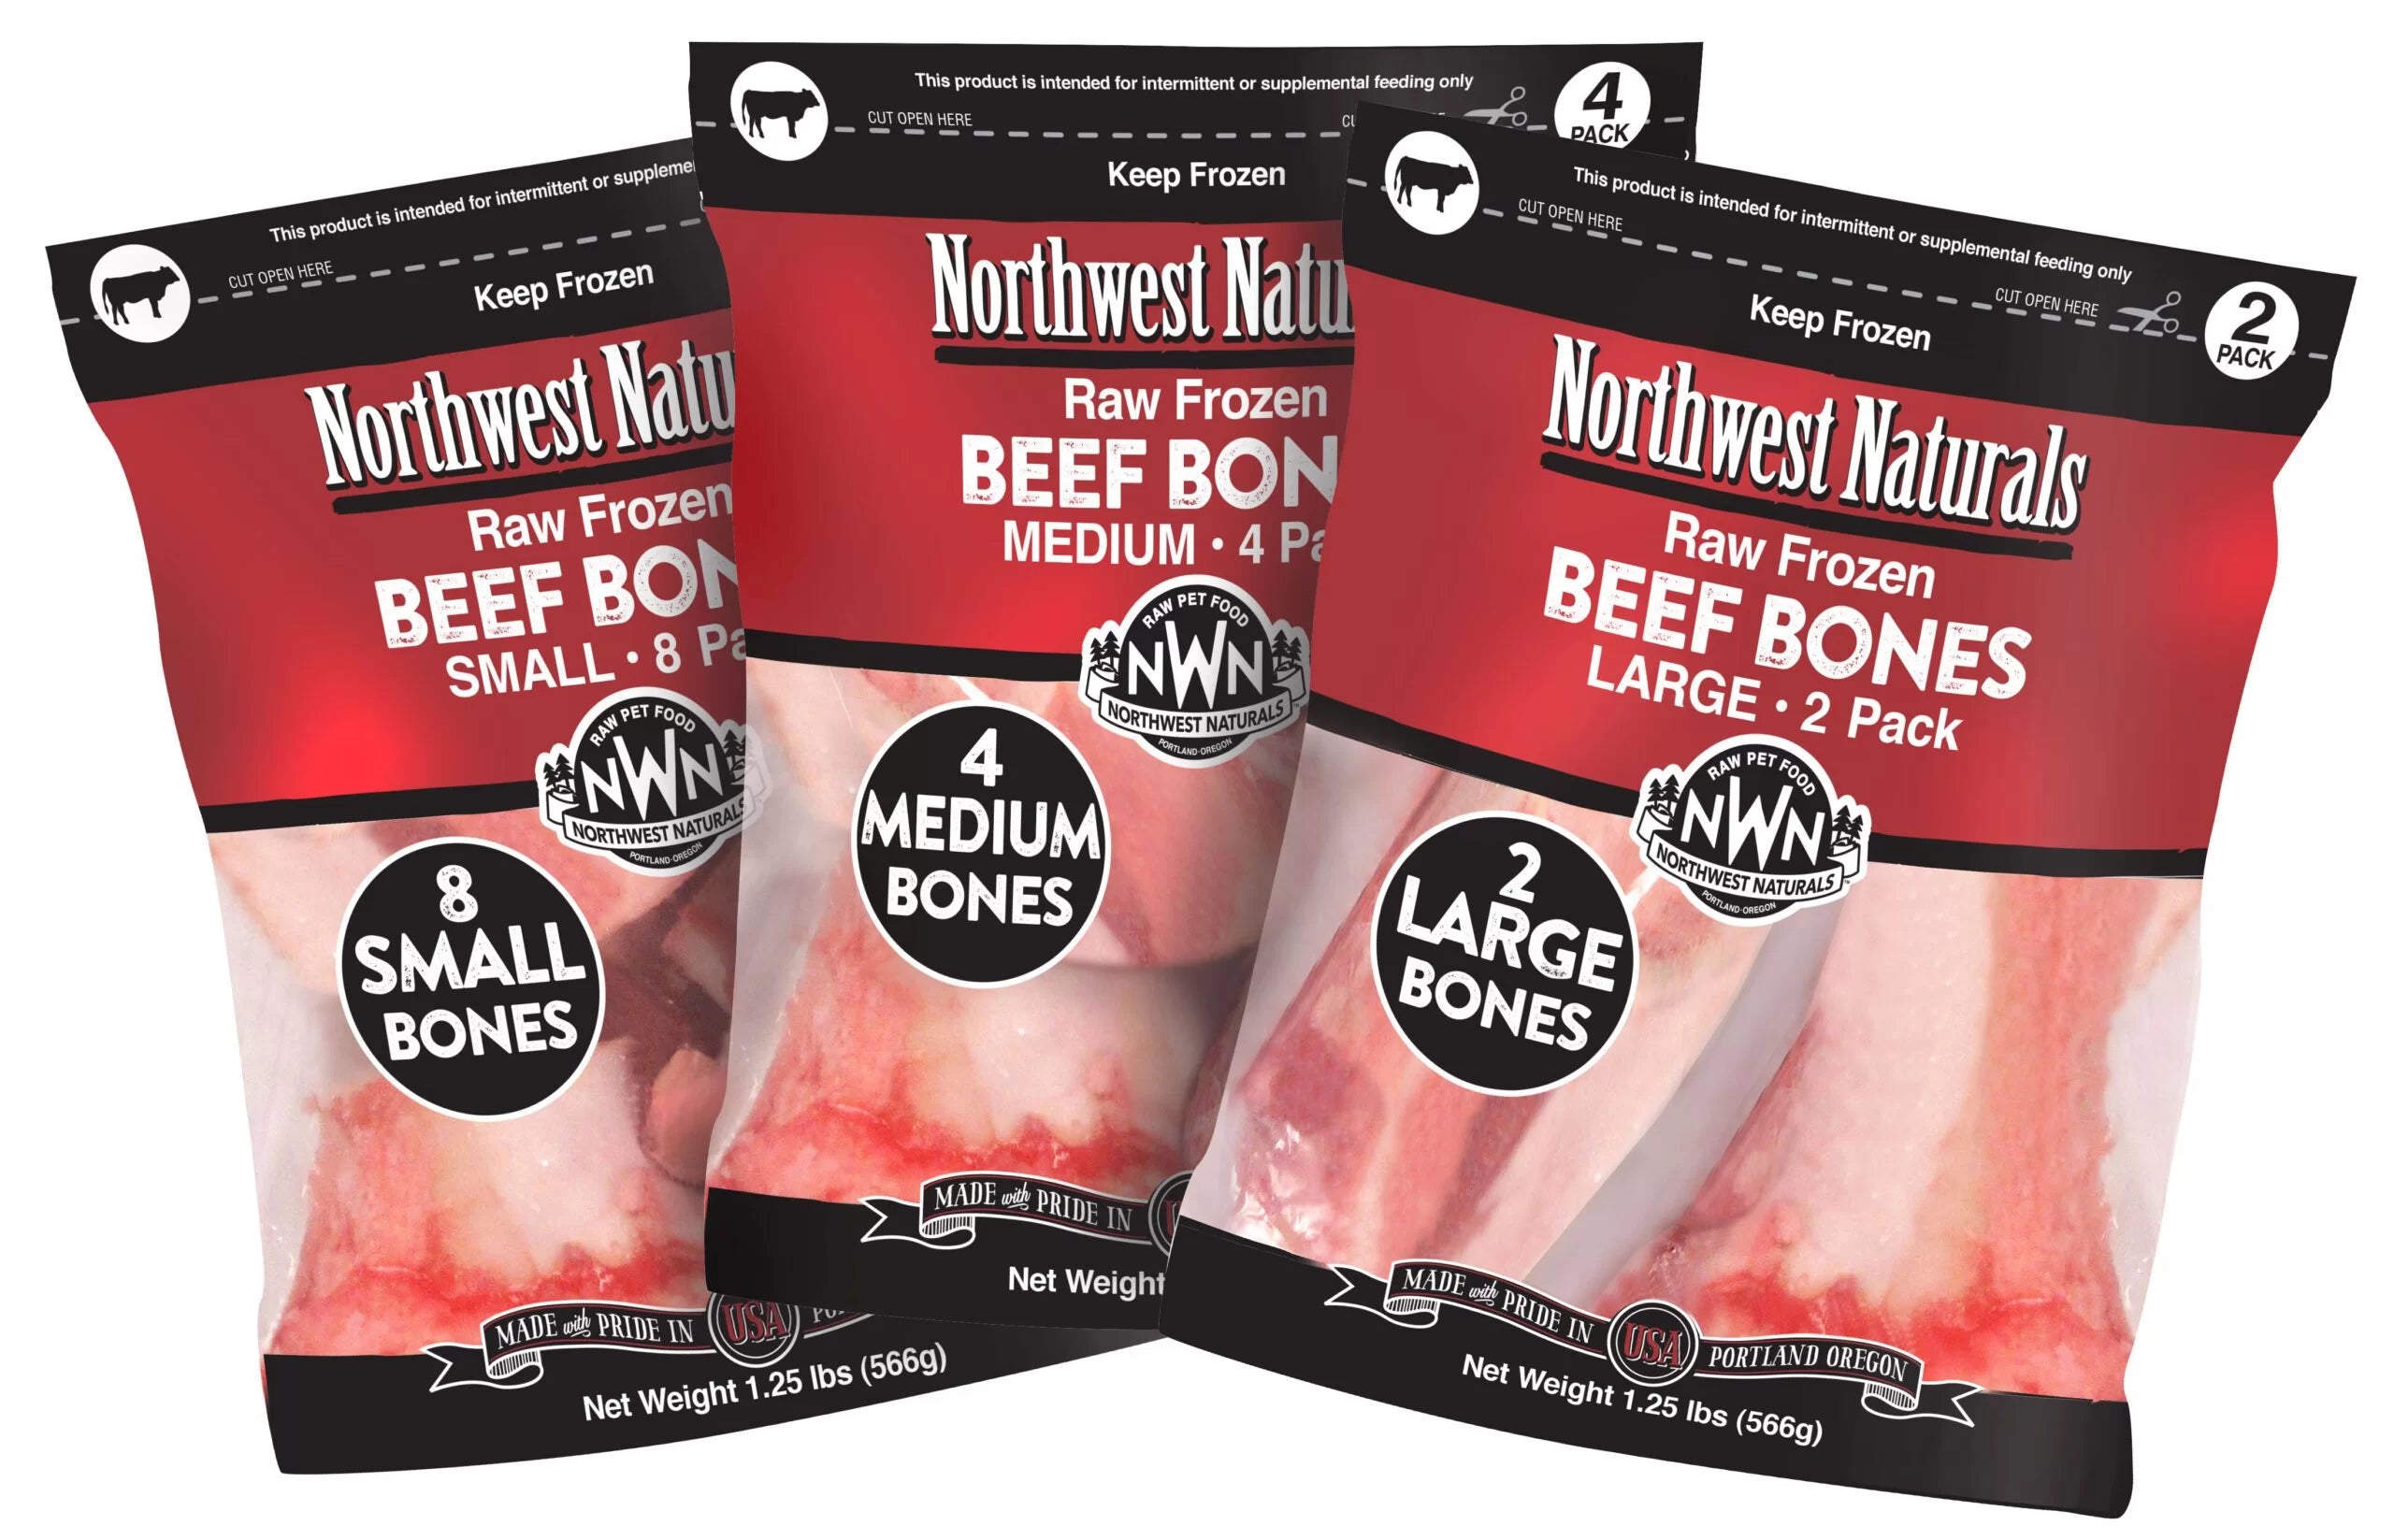 Northwest Naturals Frozen Raw Meaty Beef Bones